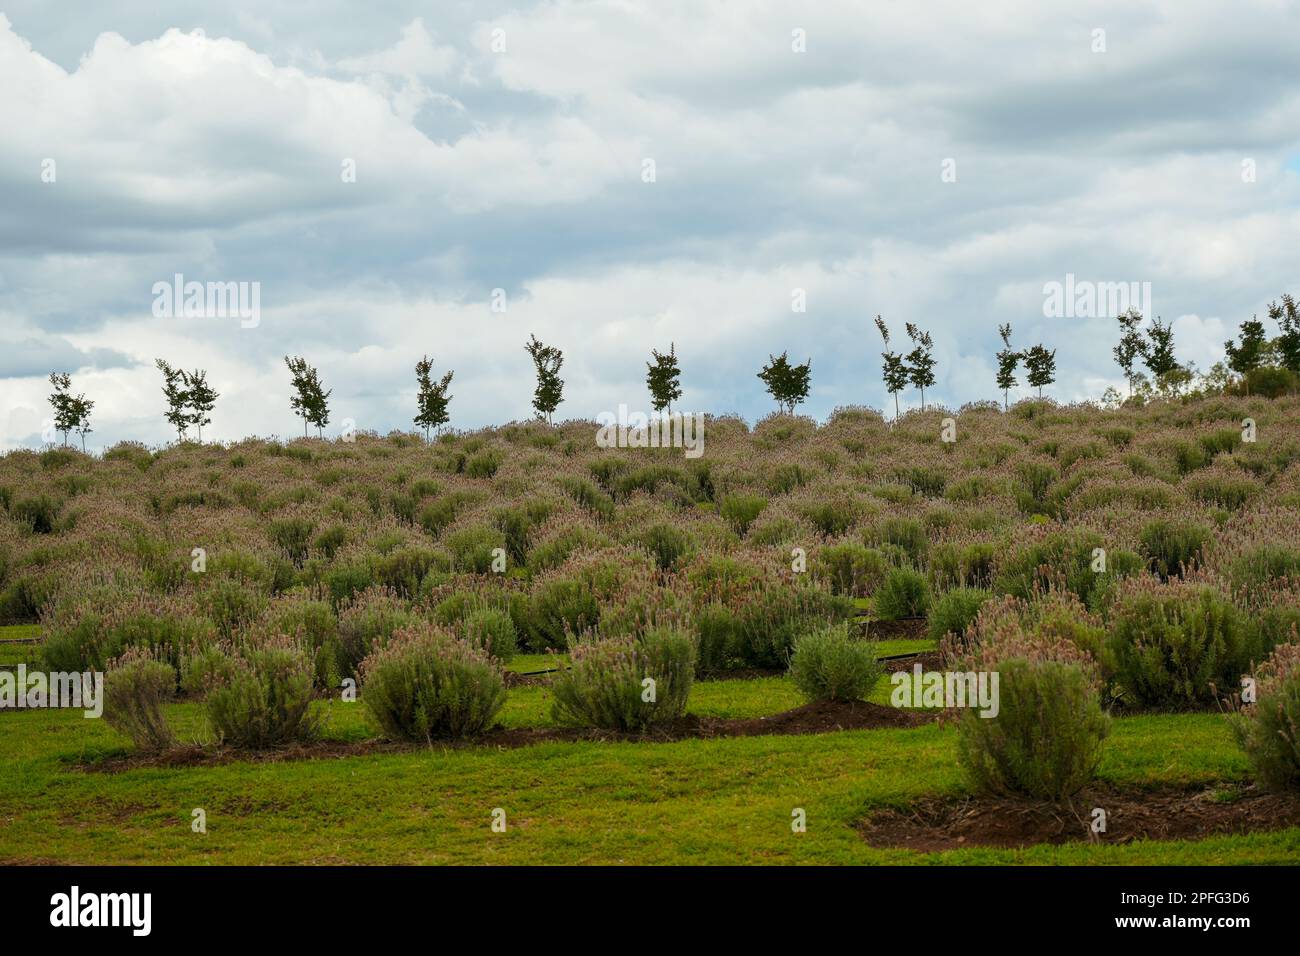 Lavendelpflanzen wachsen auf einem Hügel mit einer Reihe kleiner Bäume, Silhouette vor einem bewölkten Himmel Stockfoto